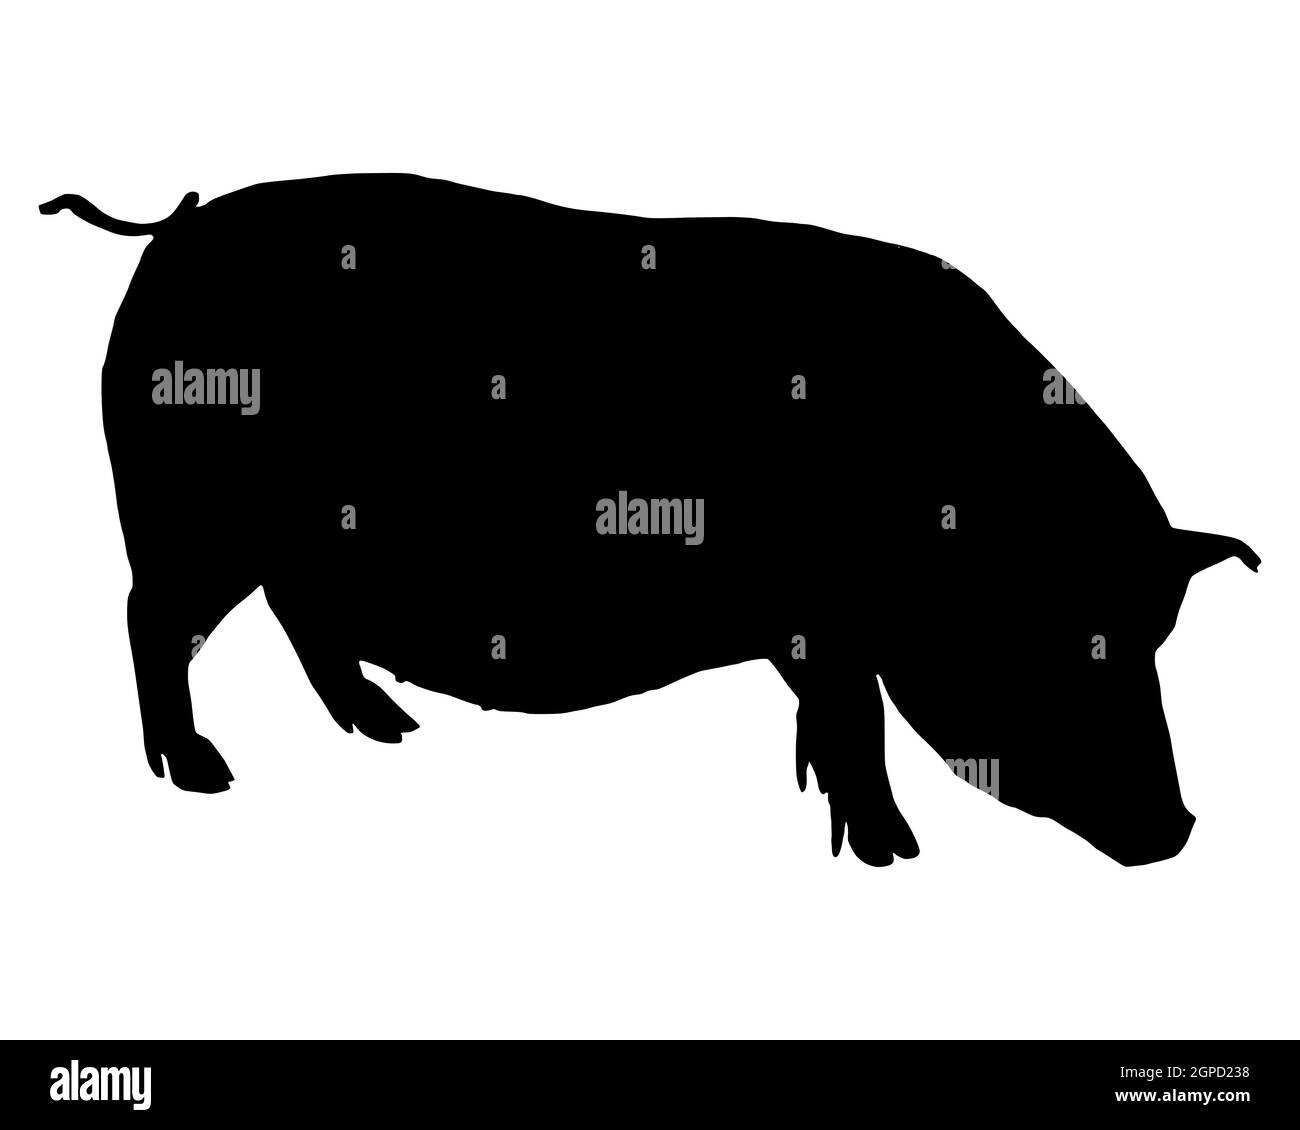 Schwarze Silhouette eines Hängebauchschweins auf weiss Stock Photo